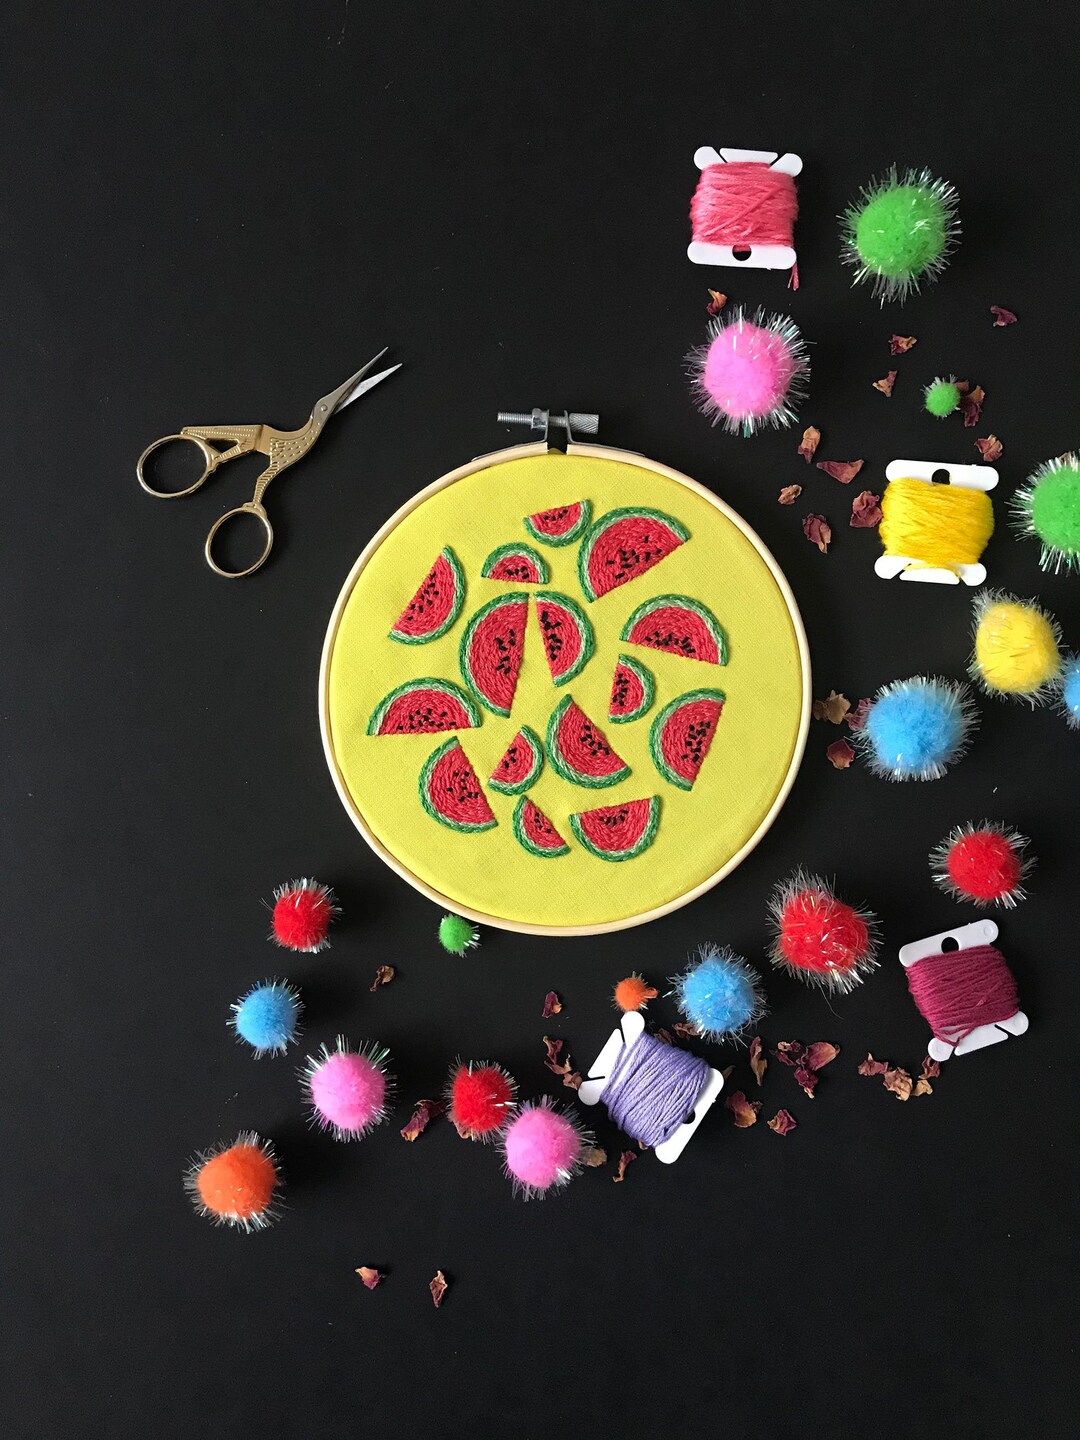 Toadstool Mushroom Embroidery Kit, Needlecraft, Embroidery Pattern,  Beginners Needlecraft, Modern Embroidery Kit, Hoop Art, Embroidery Art 